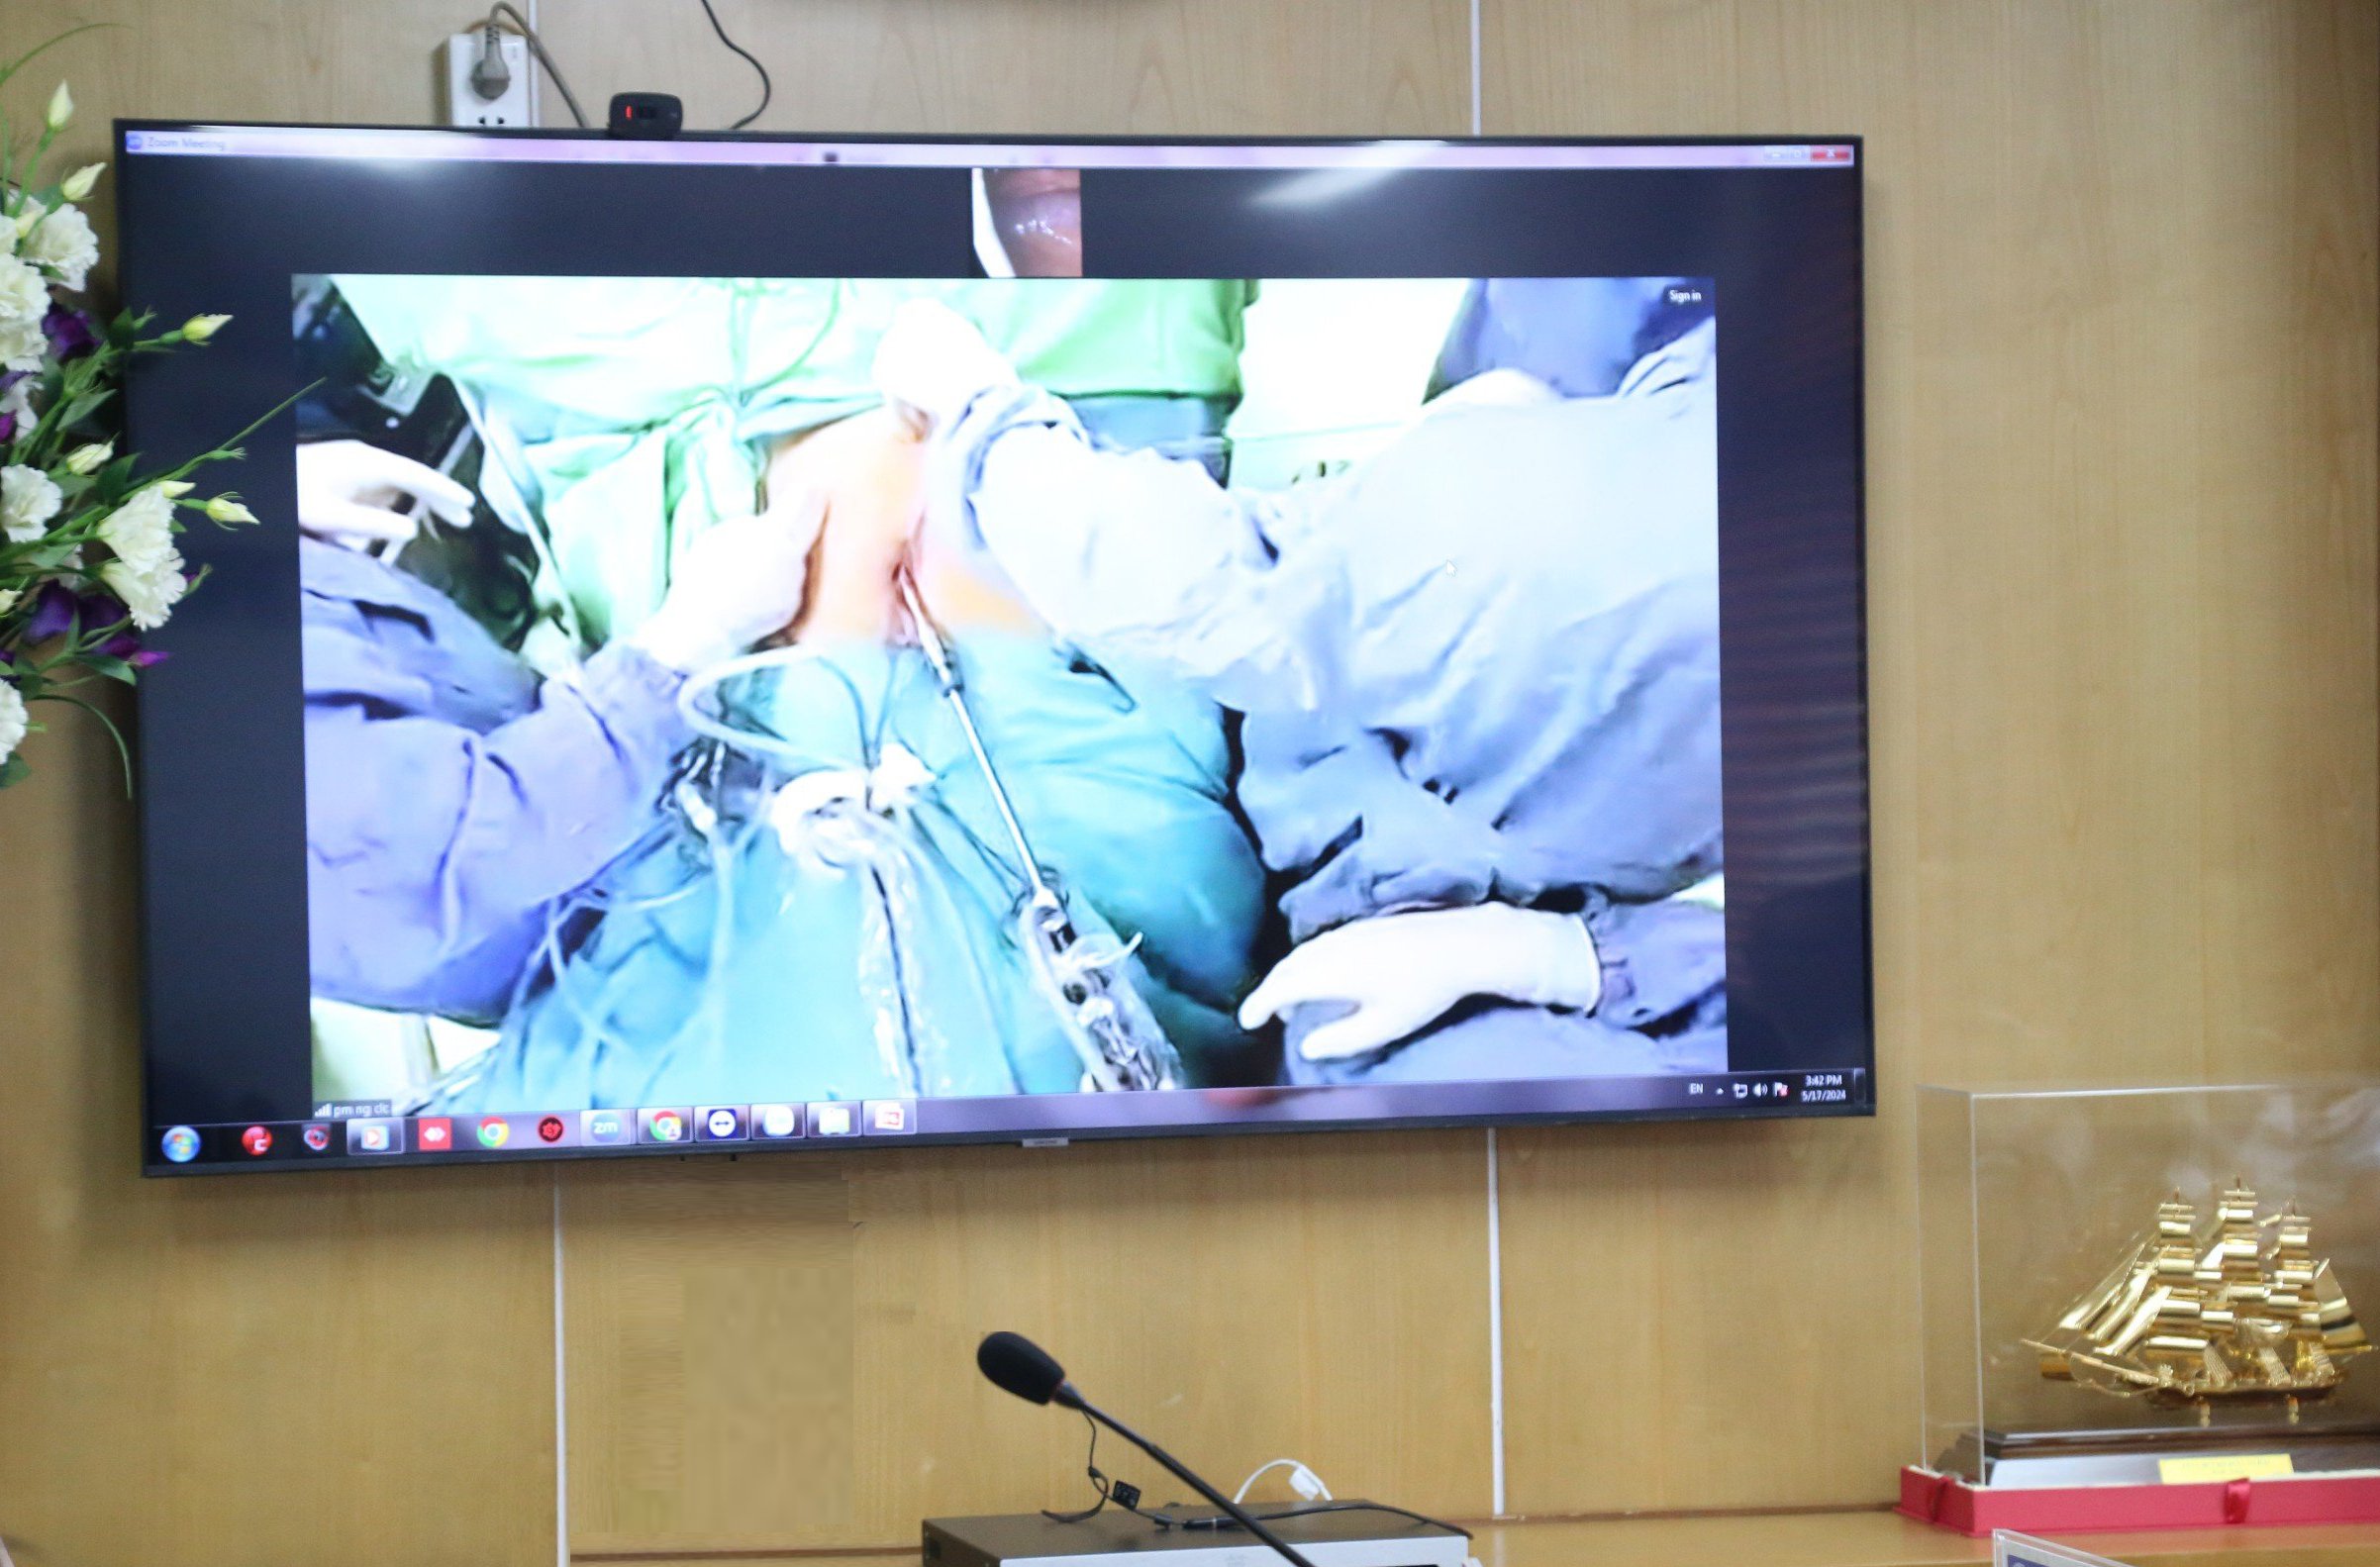 Ca phẫu thuật nội soi cắt đại tràng được truyền hình trực tiếp từ phòng mổ